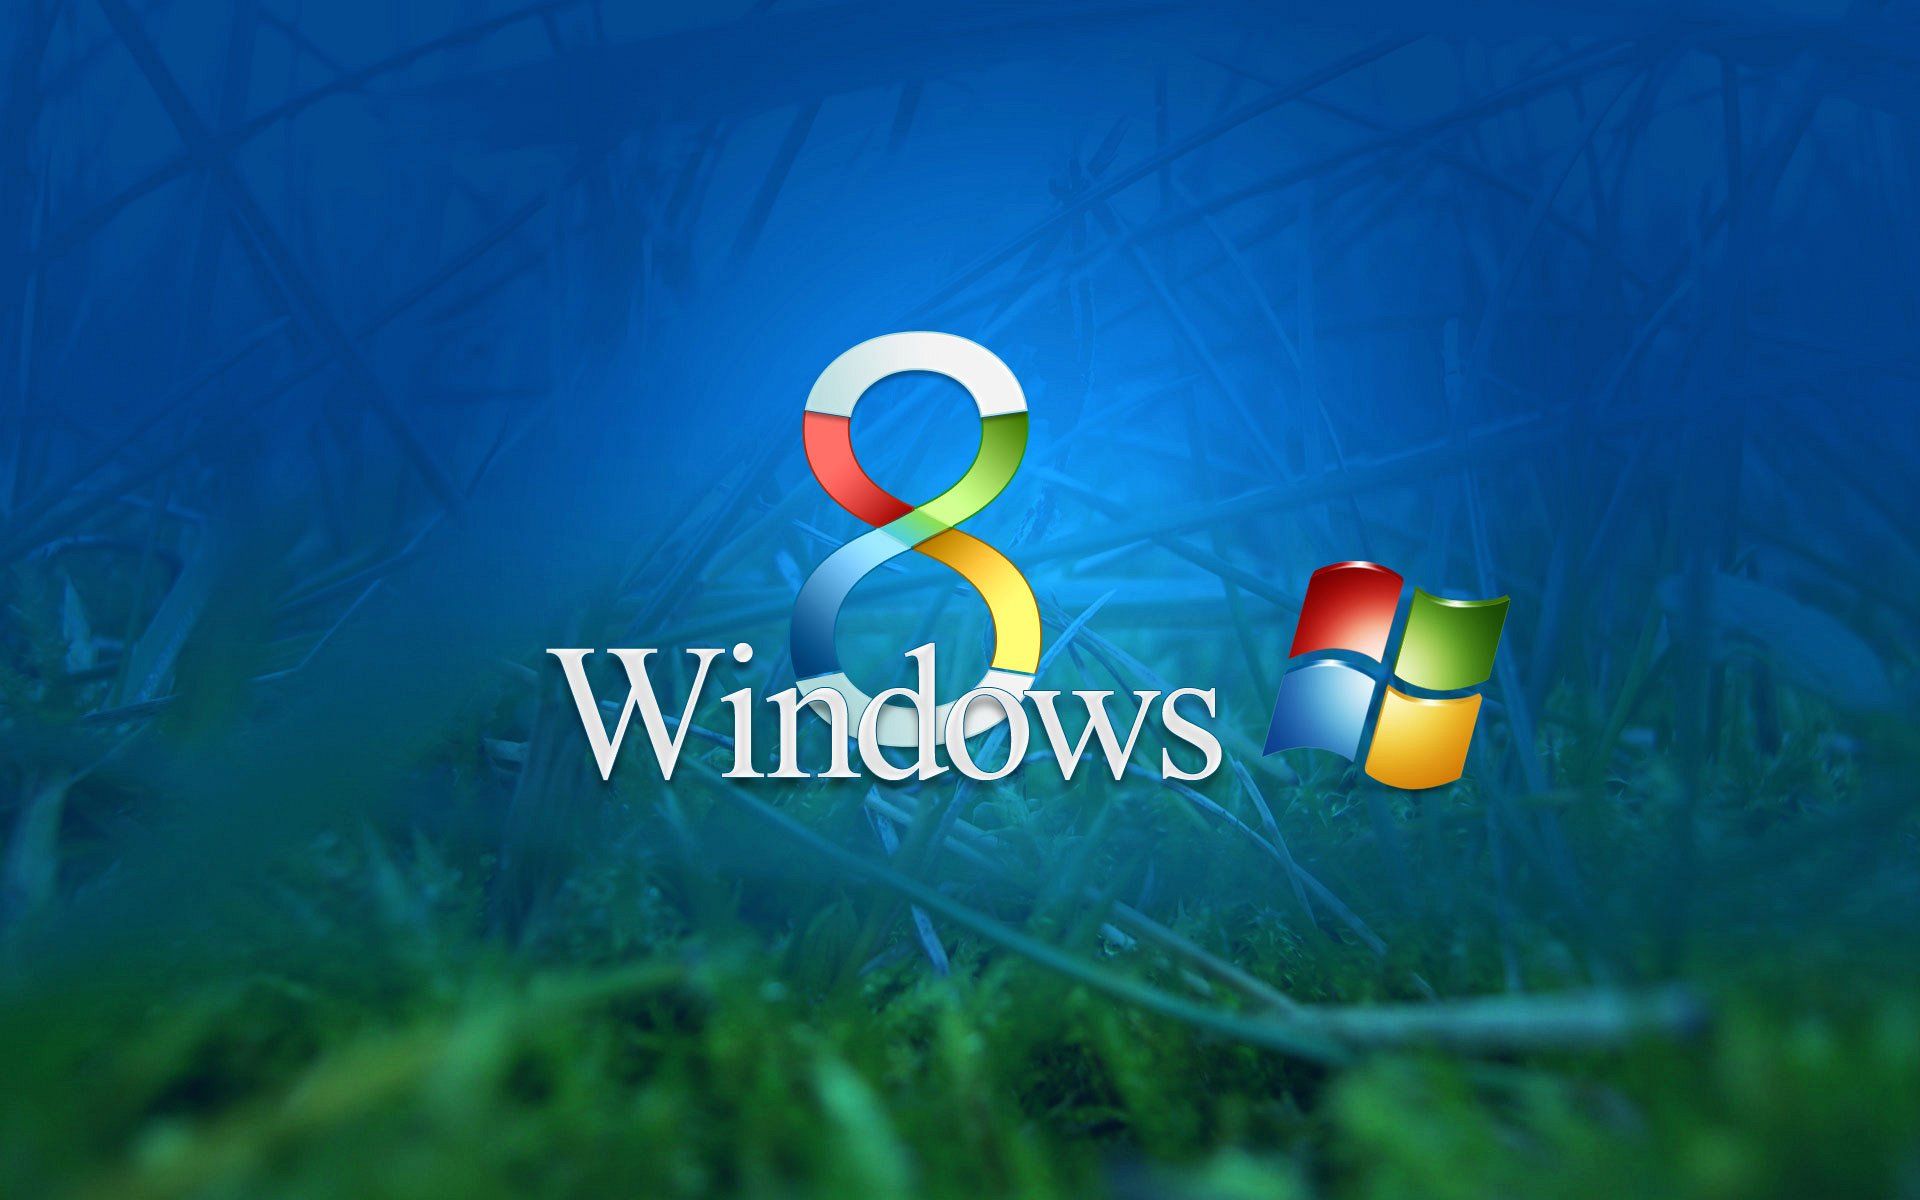 Windows Grass Vista Wallpaper - Windows Vista Wallpapers - Free